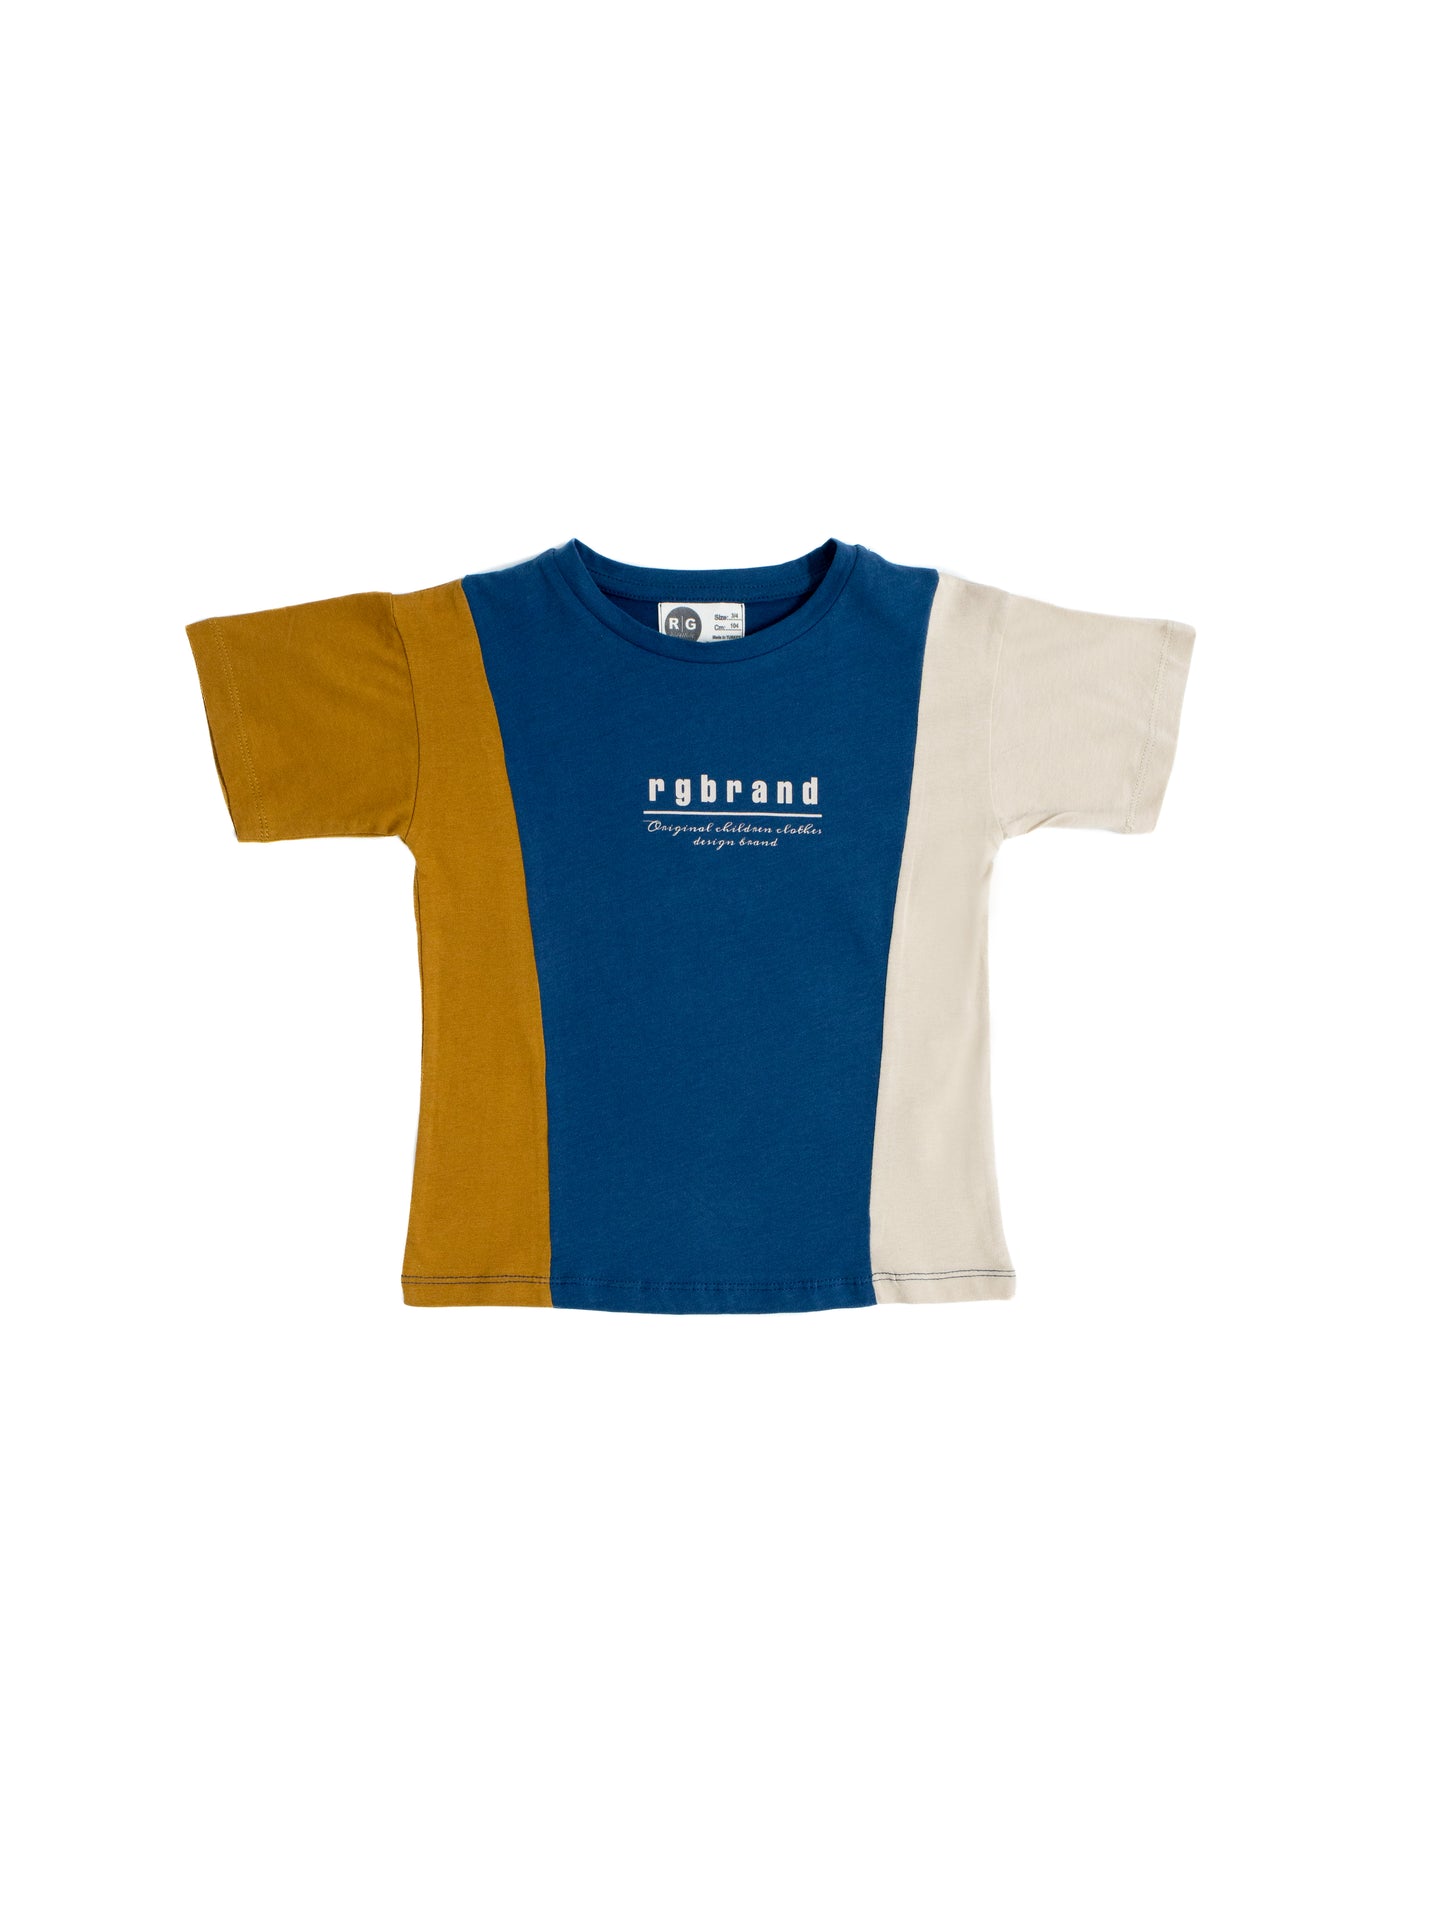 Children's Unisex 100% Cotton 3 Color T-Shirt with Print Detail